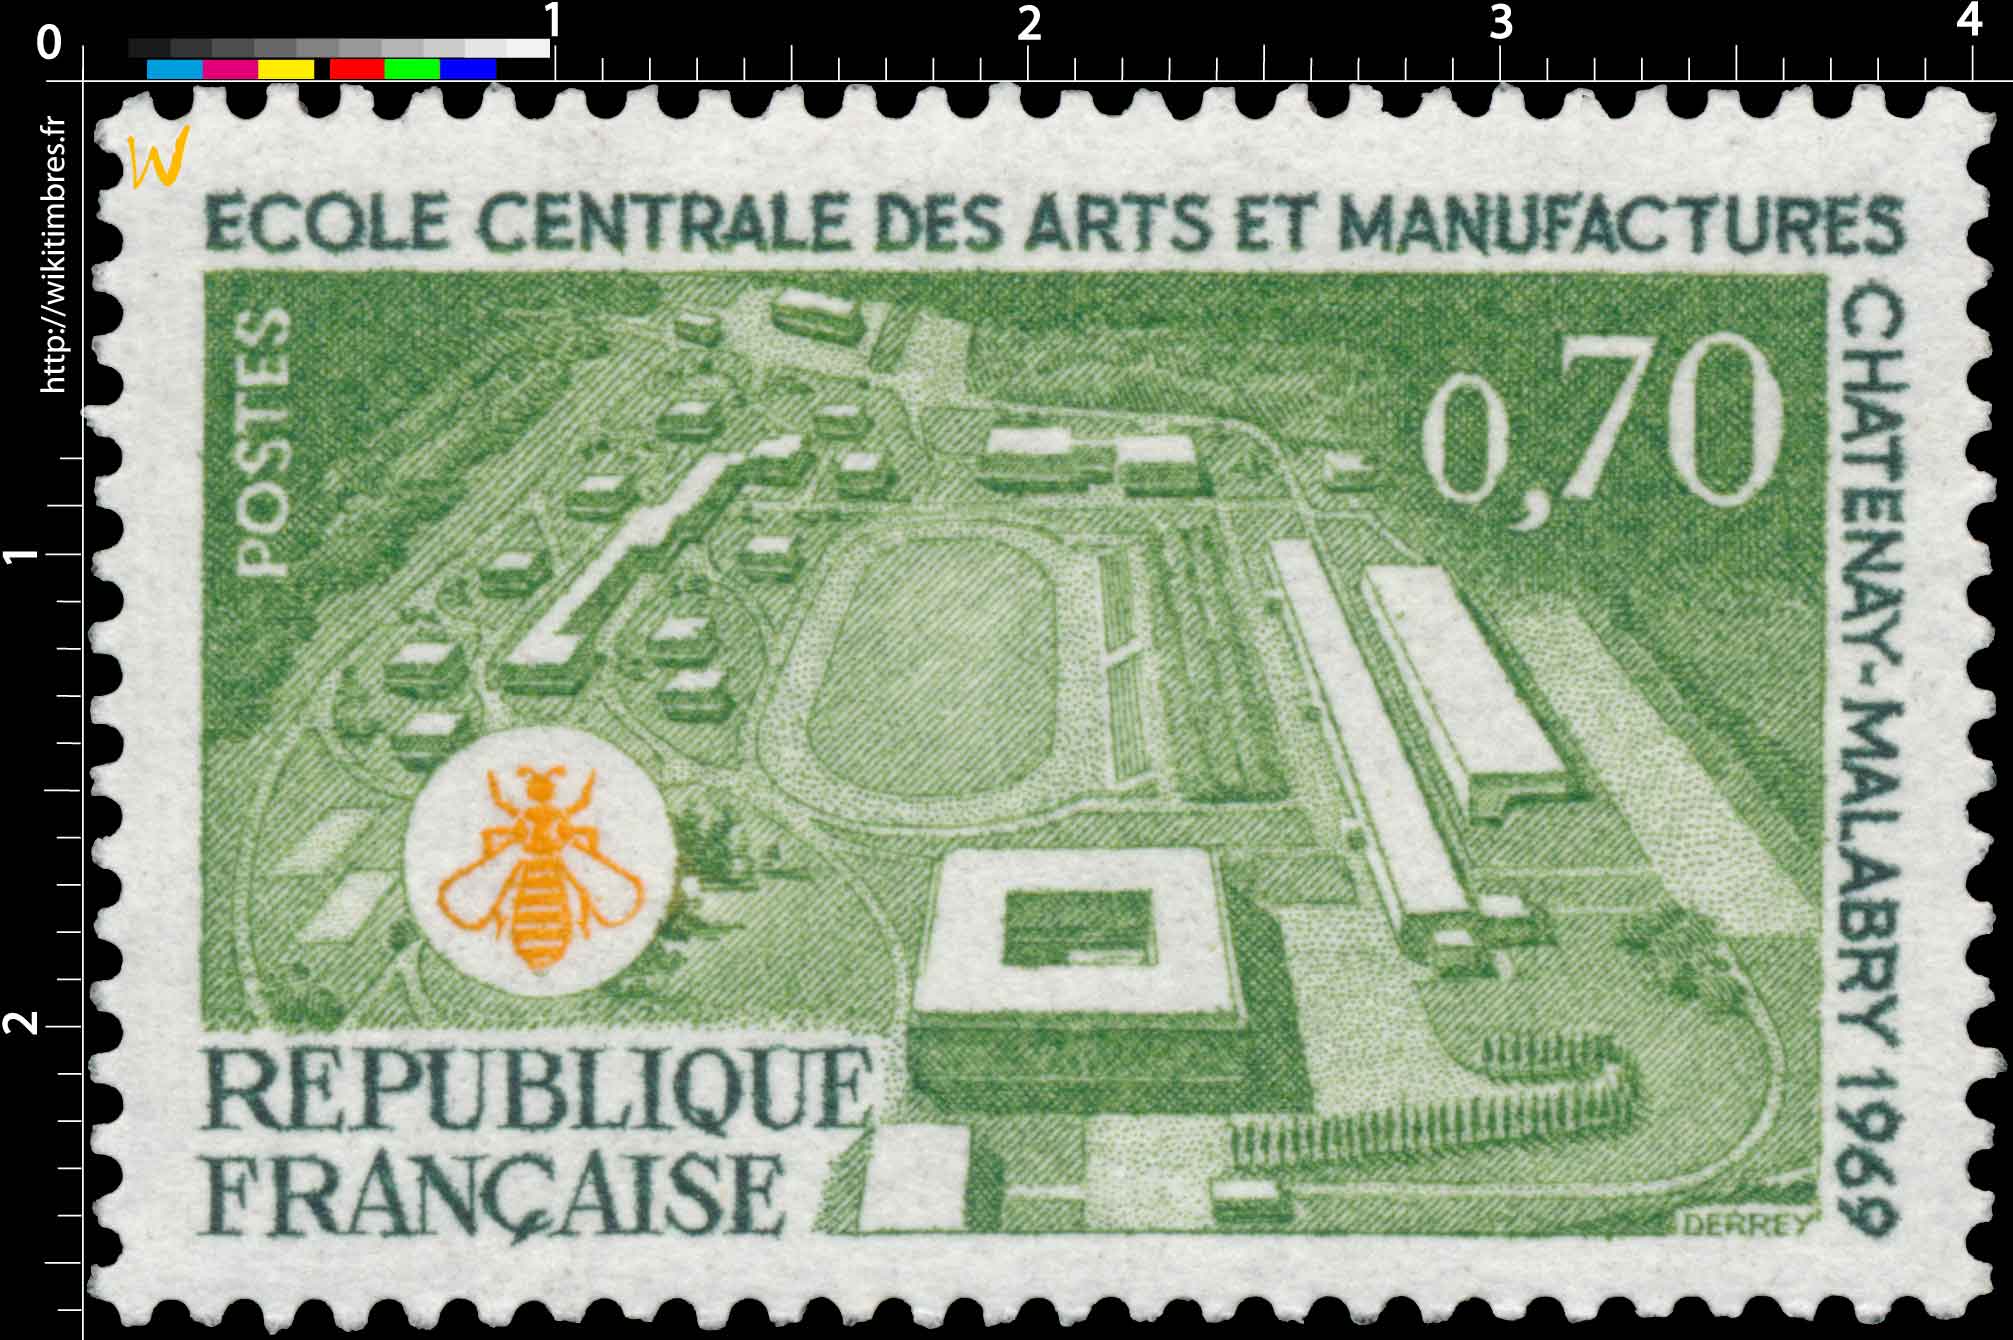 ÉCOLE CENTRALE DES ARTS ET MANUFACTURES À CHÂTENAY-MALABRY 1969